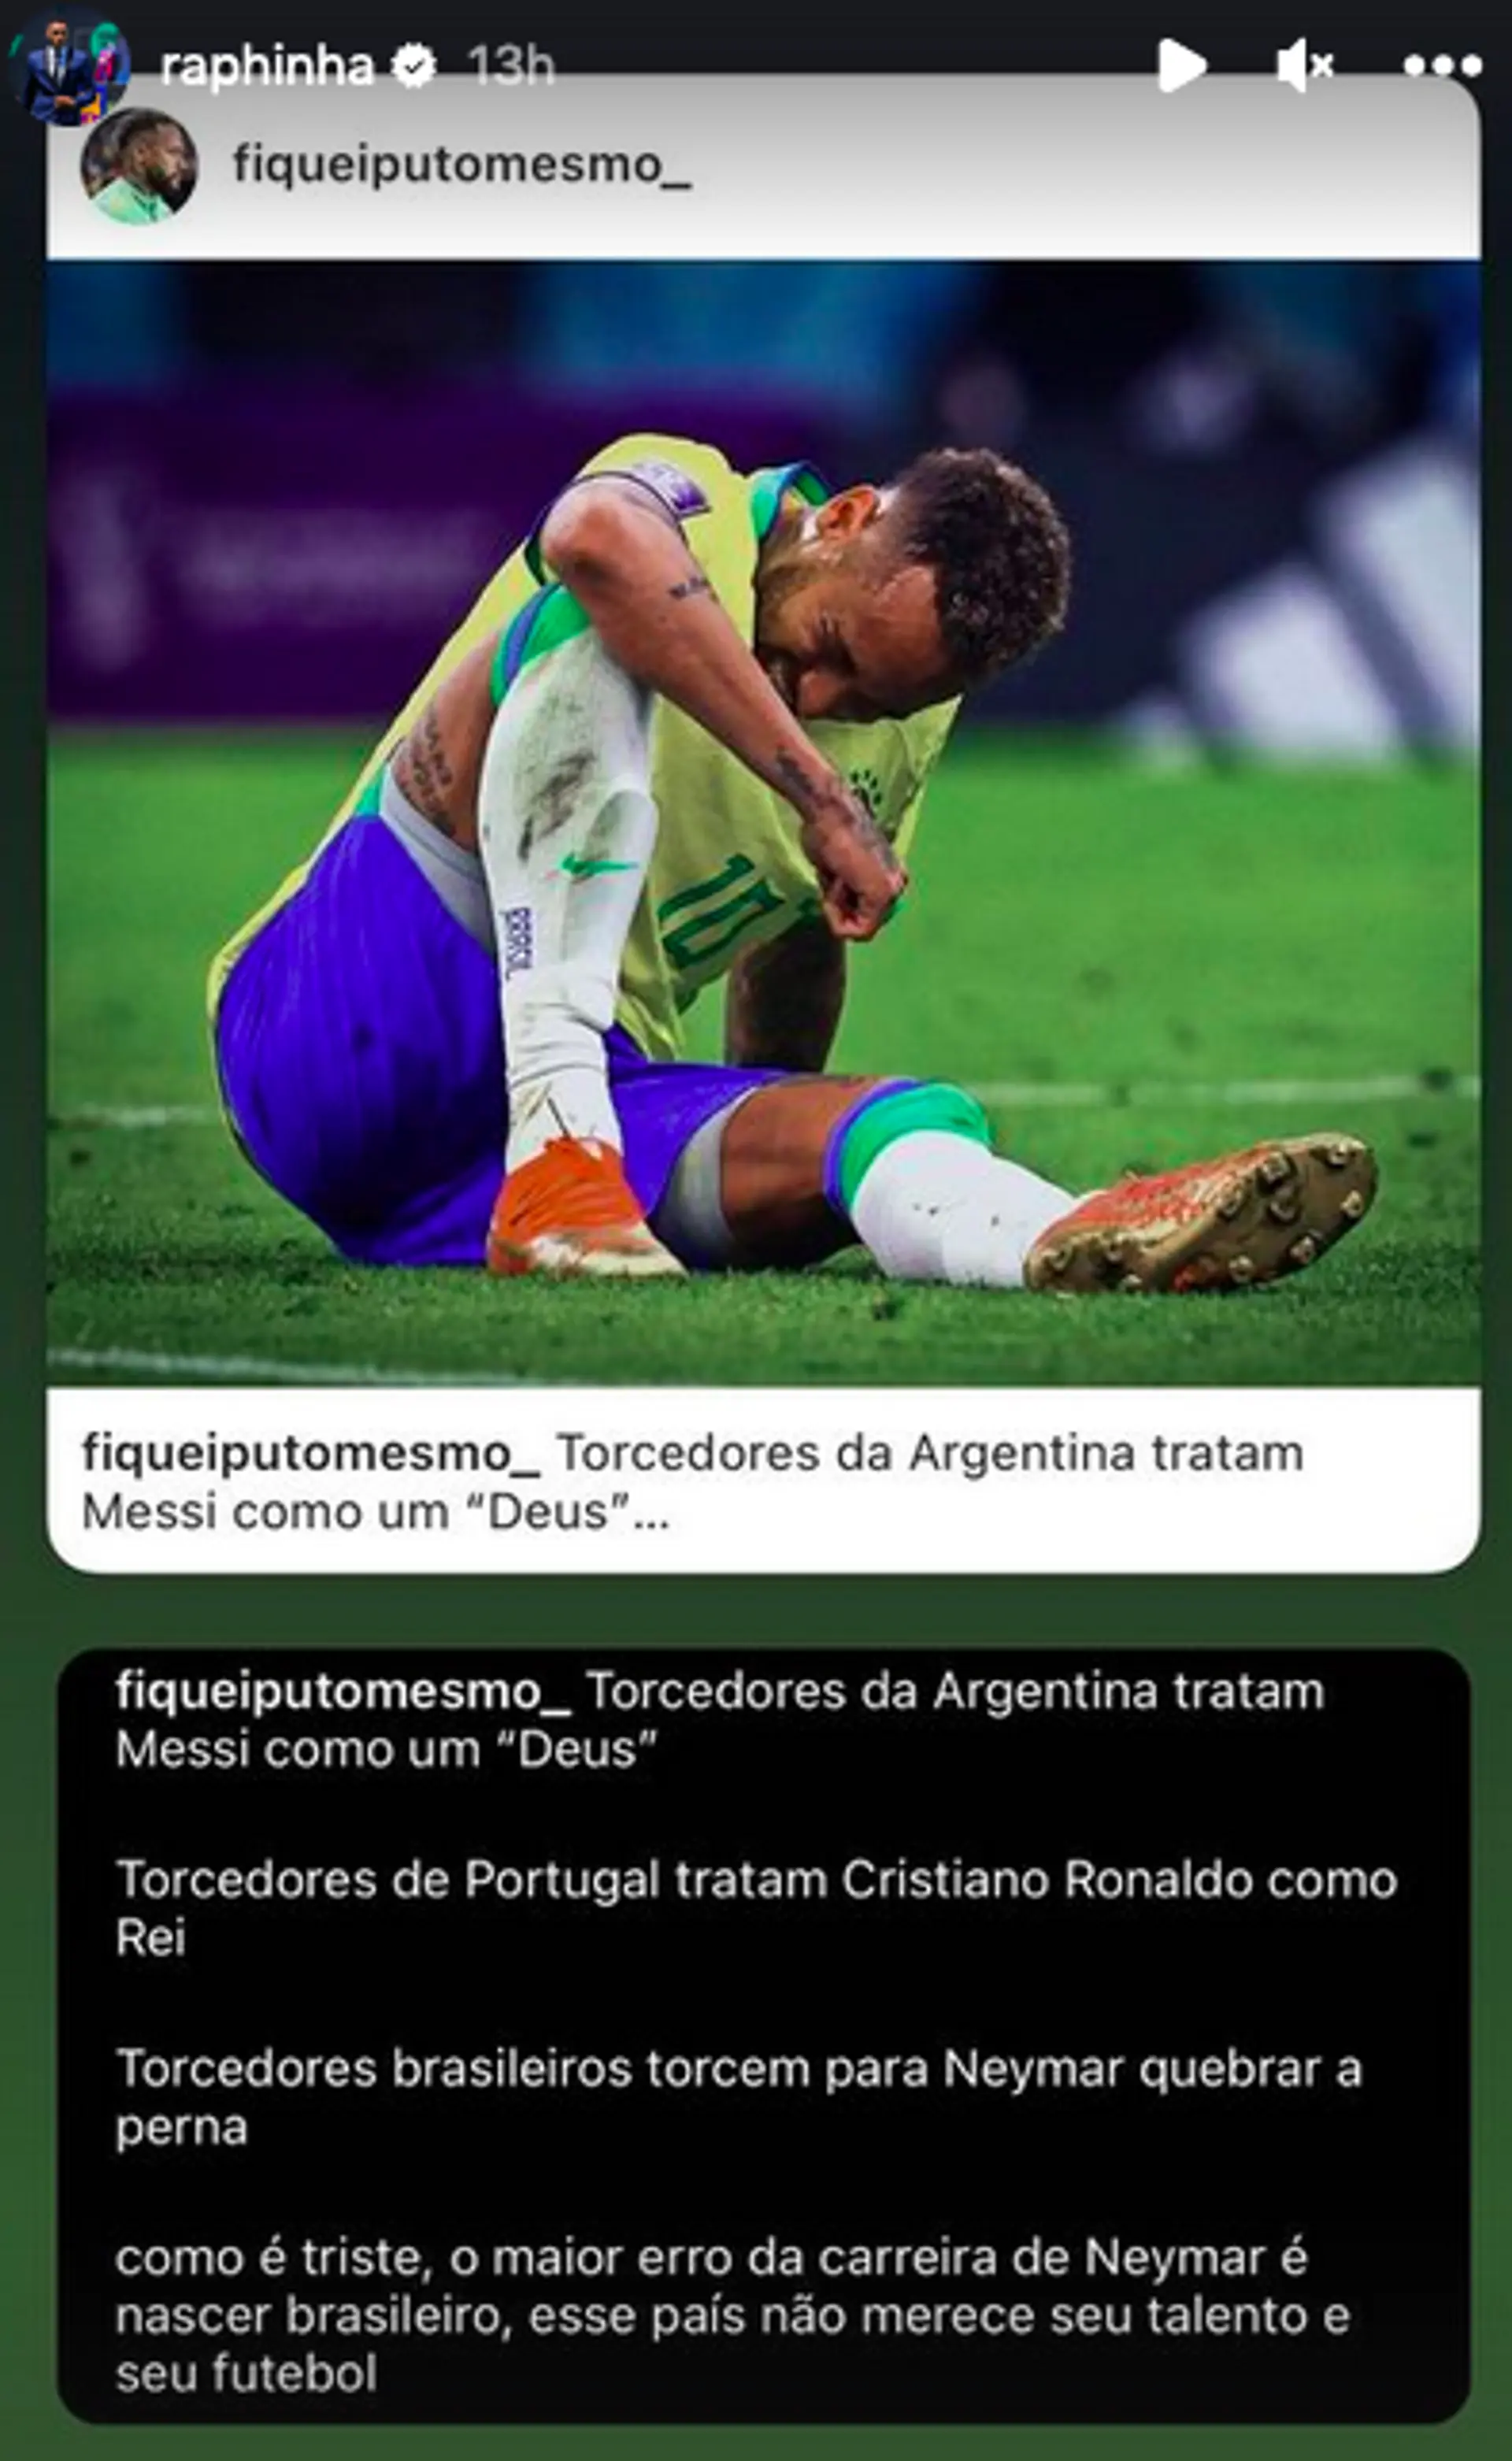 dfa2d962 868f 40e2 8e00 32b2dd619d44?width=1920&quality=75 'They want him to break his leg': Raphinha slams Brazil fans amid Neymar treatment